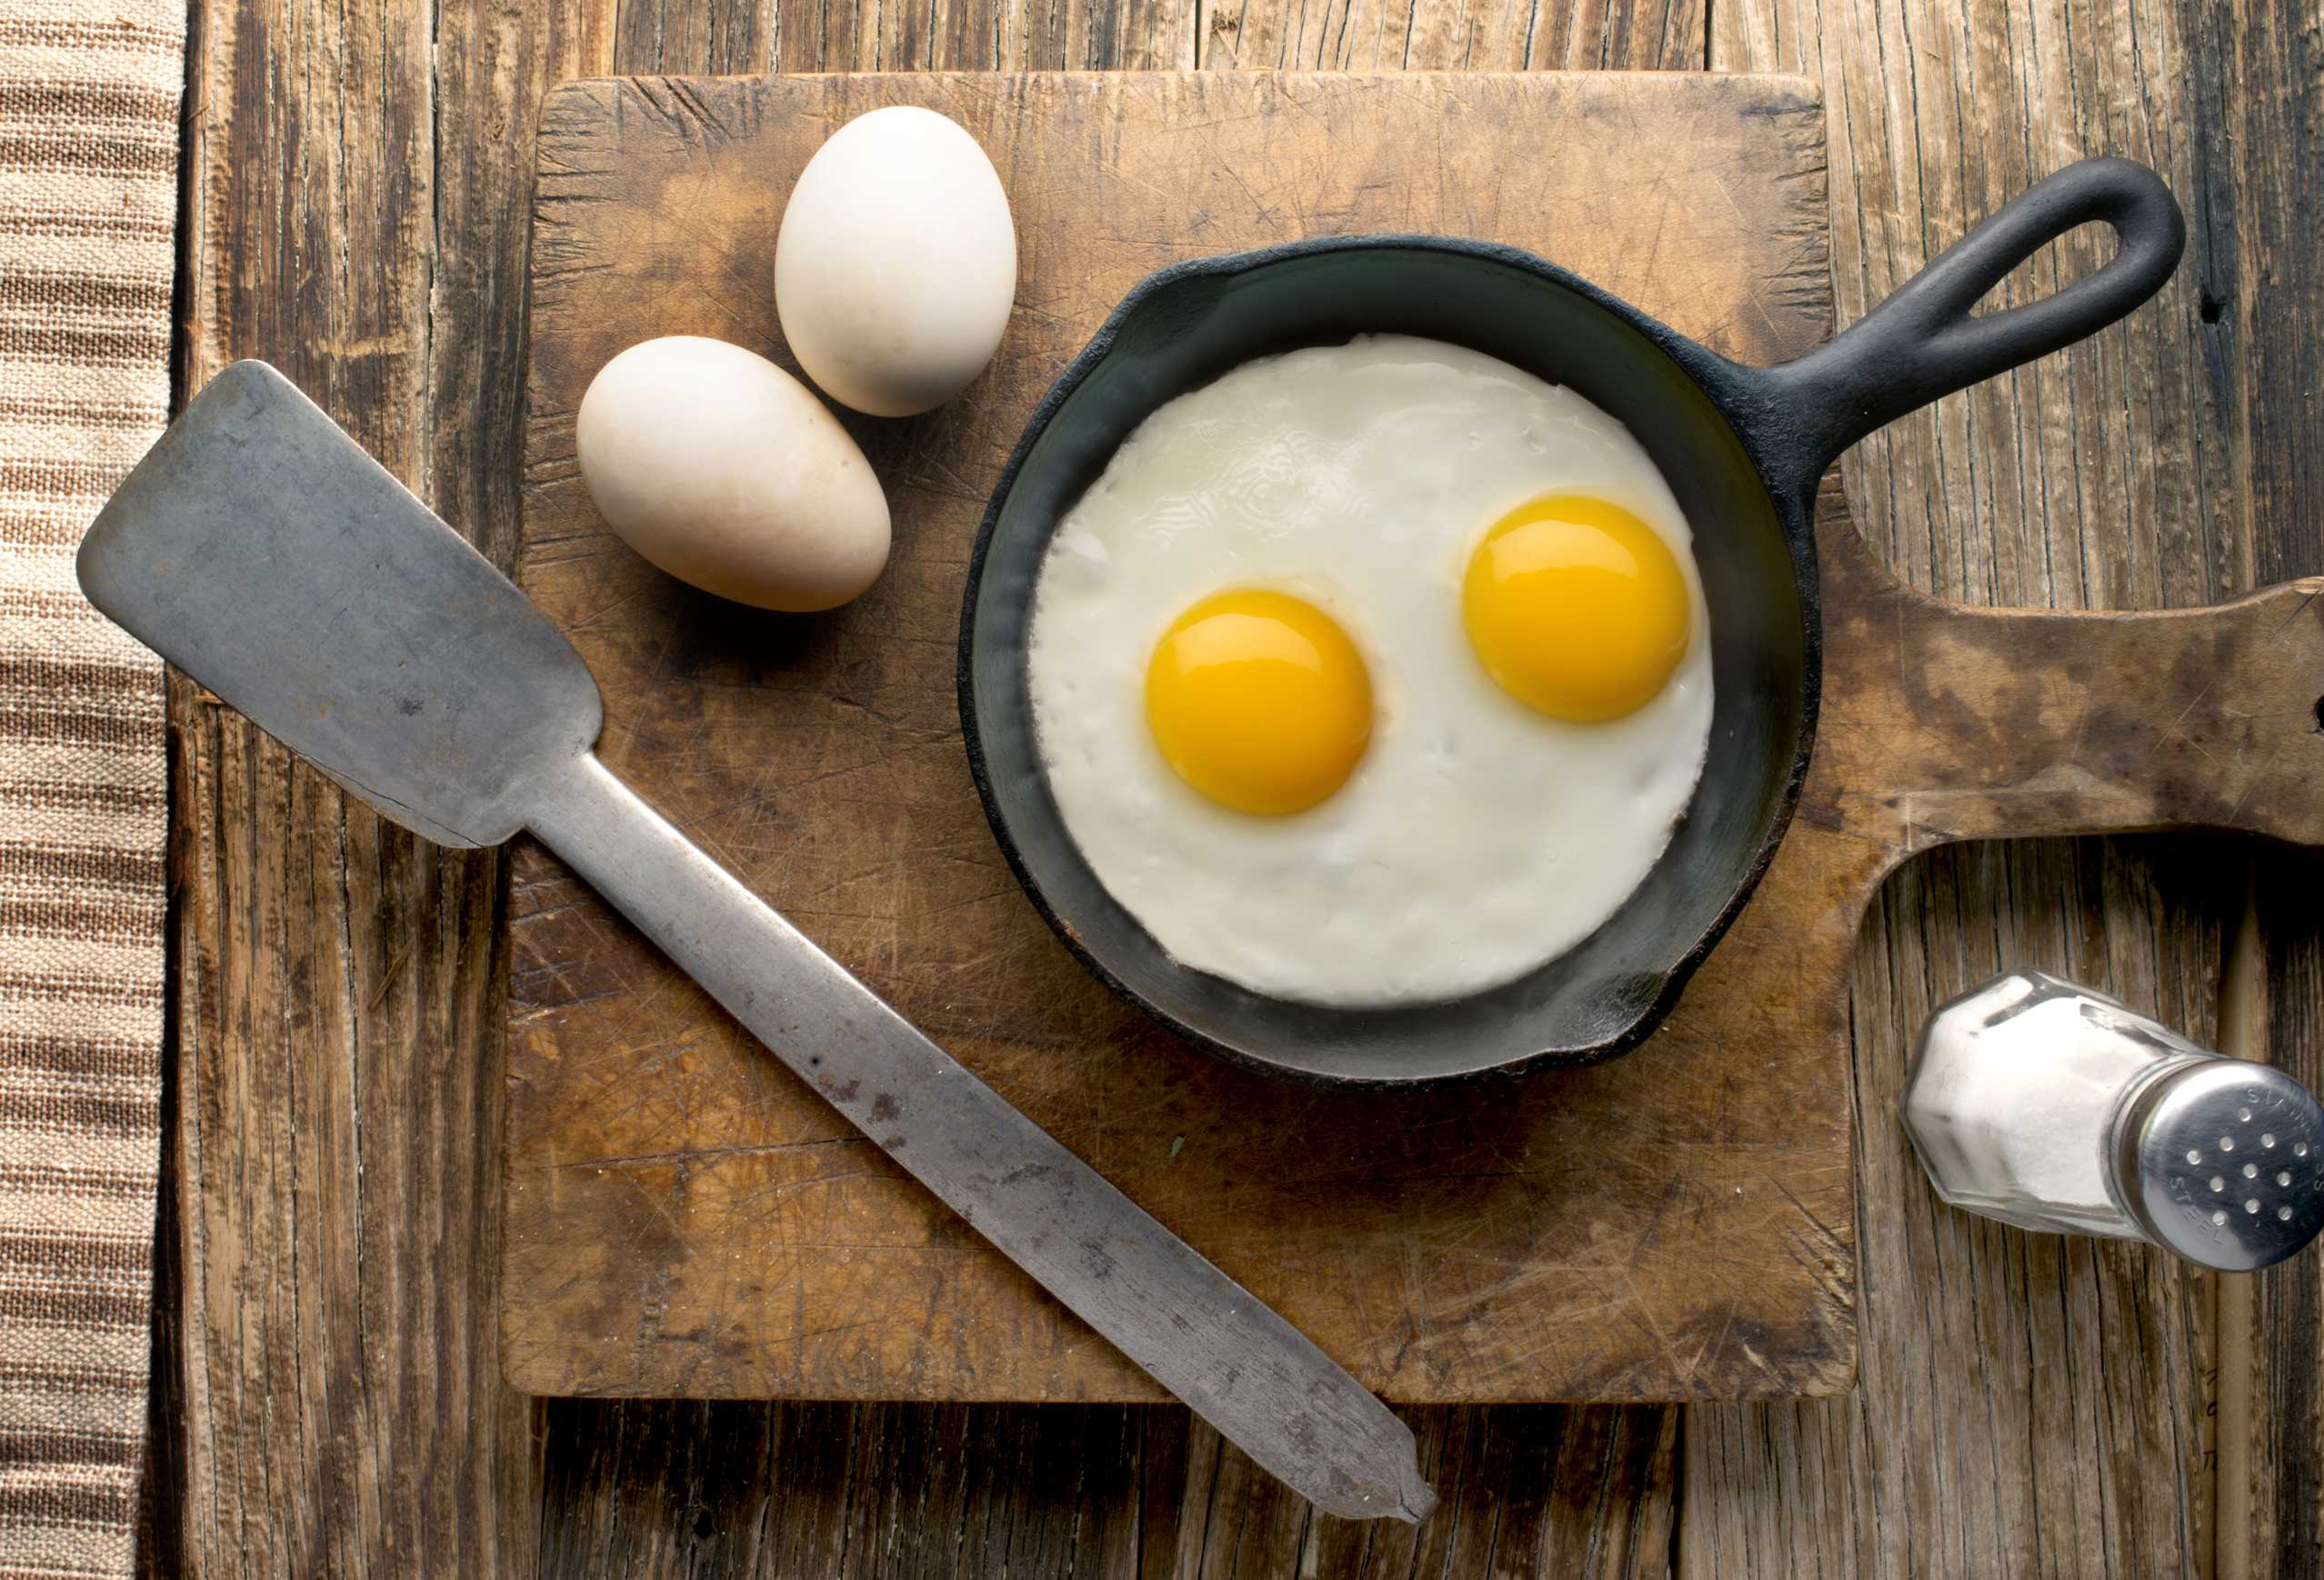 microsoft, manger des œufs augmentera-t-il vraiment le taux de cholestérol? un examen par des professionnels de la nutrition